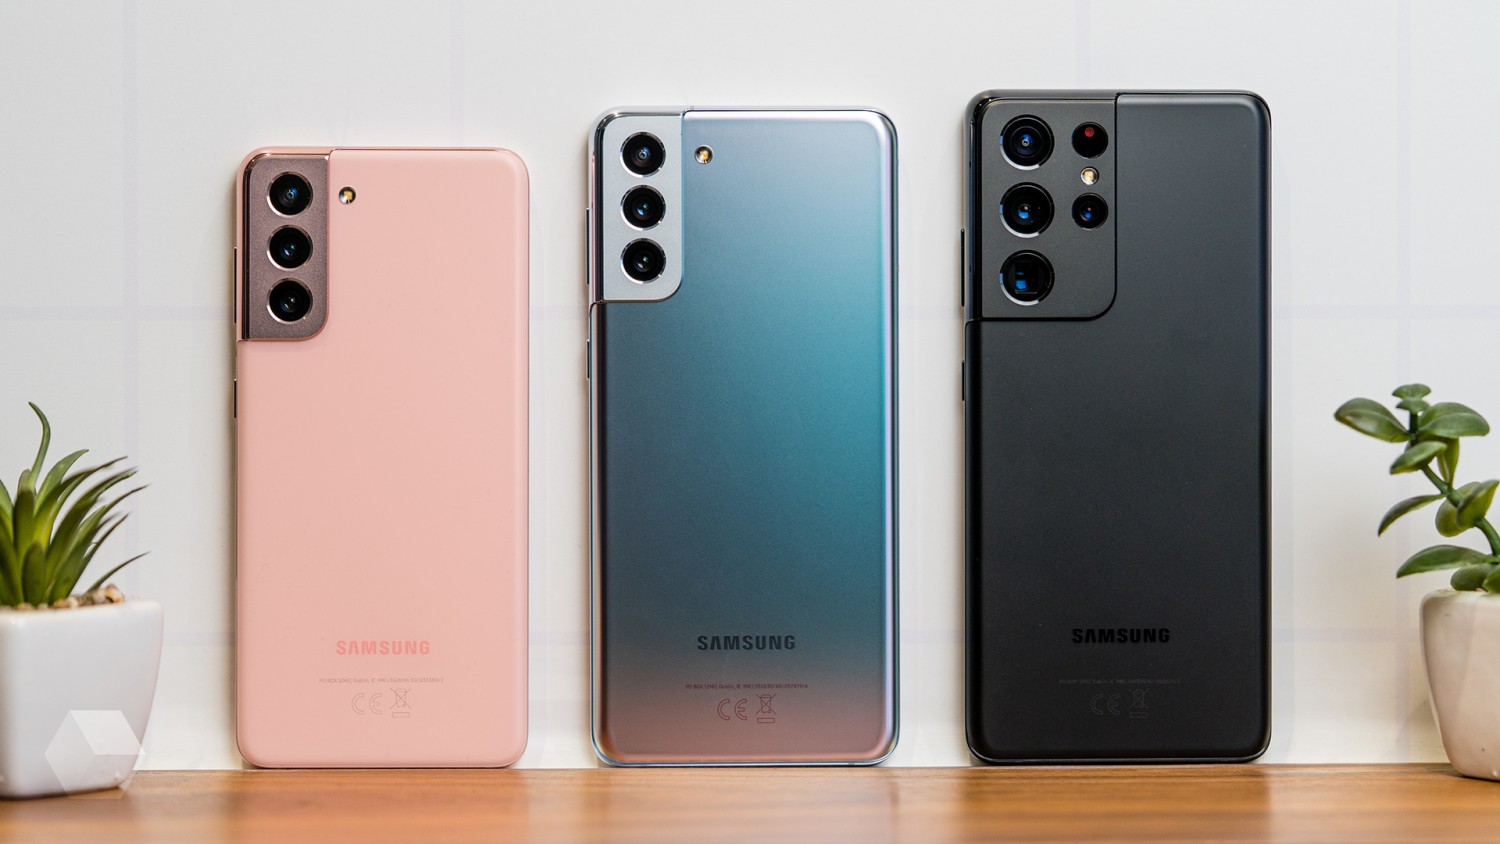 Встречайте Samsung Galaxy S21, S21+ и S21 Ultra! Первый взгляд